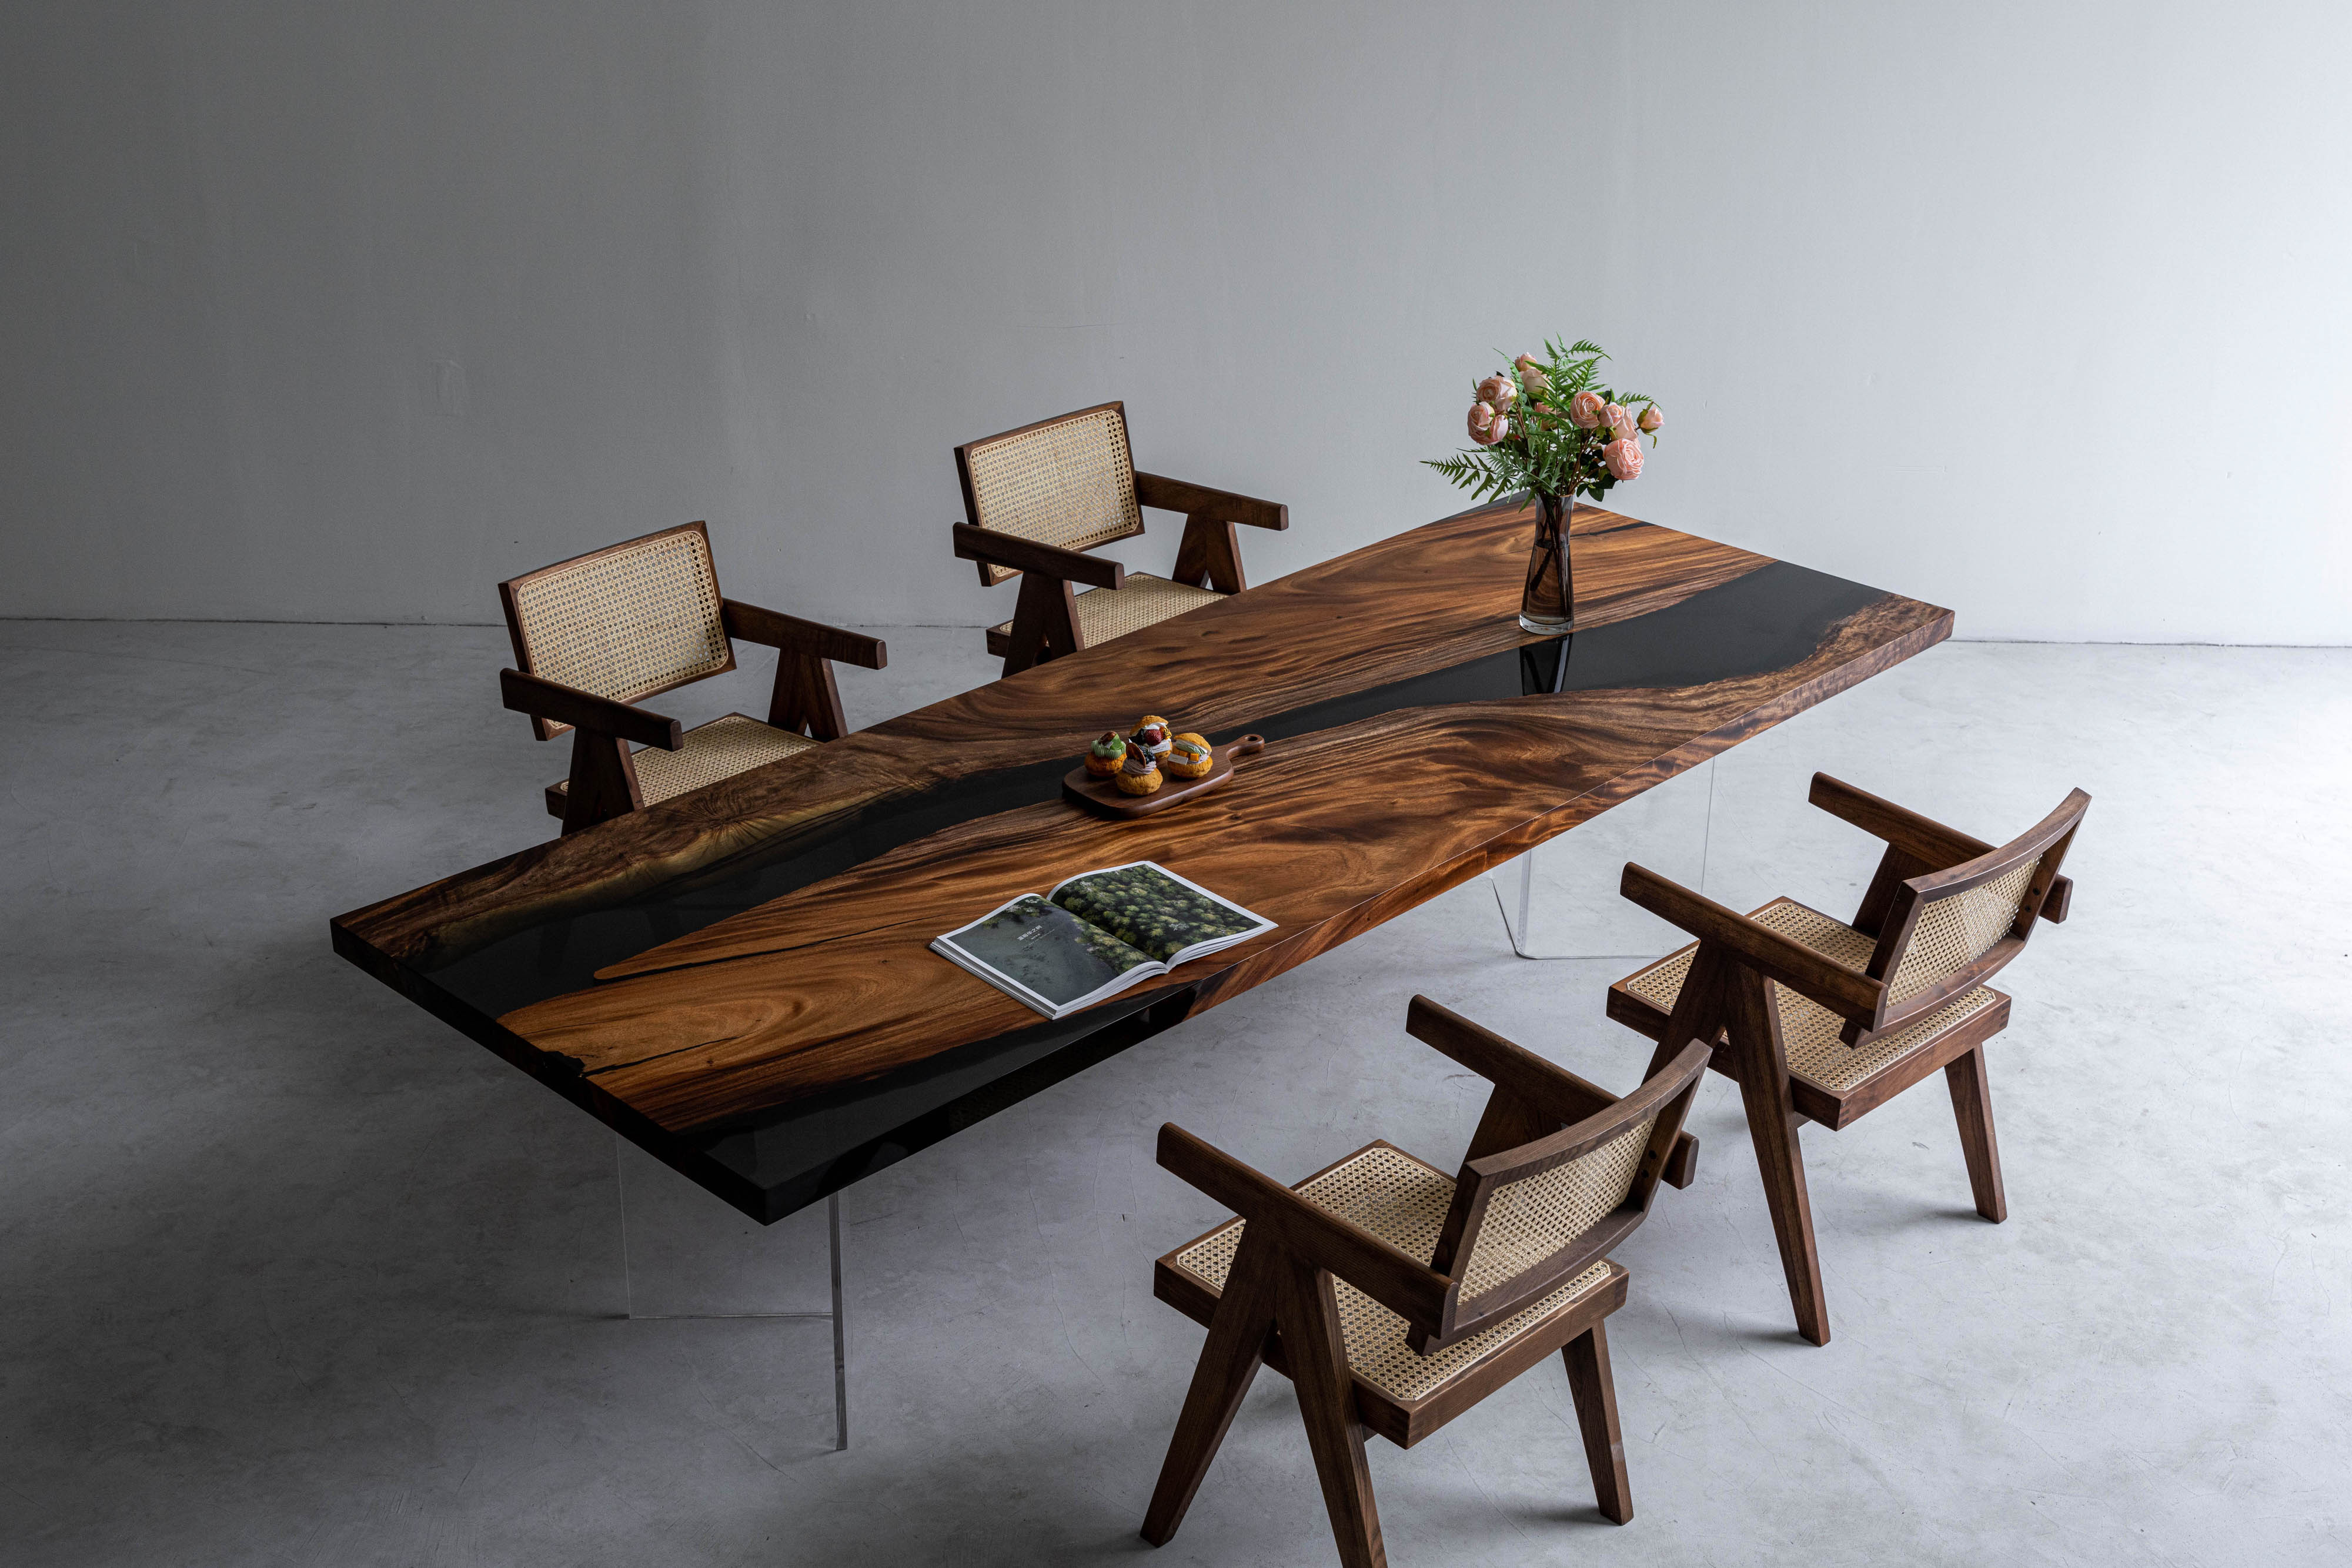 Tavolo in resina epossidica tinto color noce nero, utilizza legno di noce del Sud America